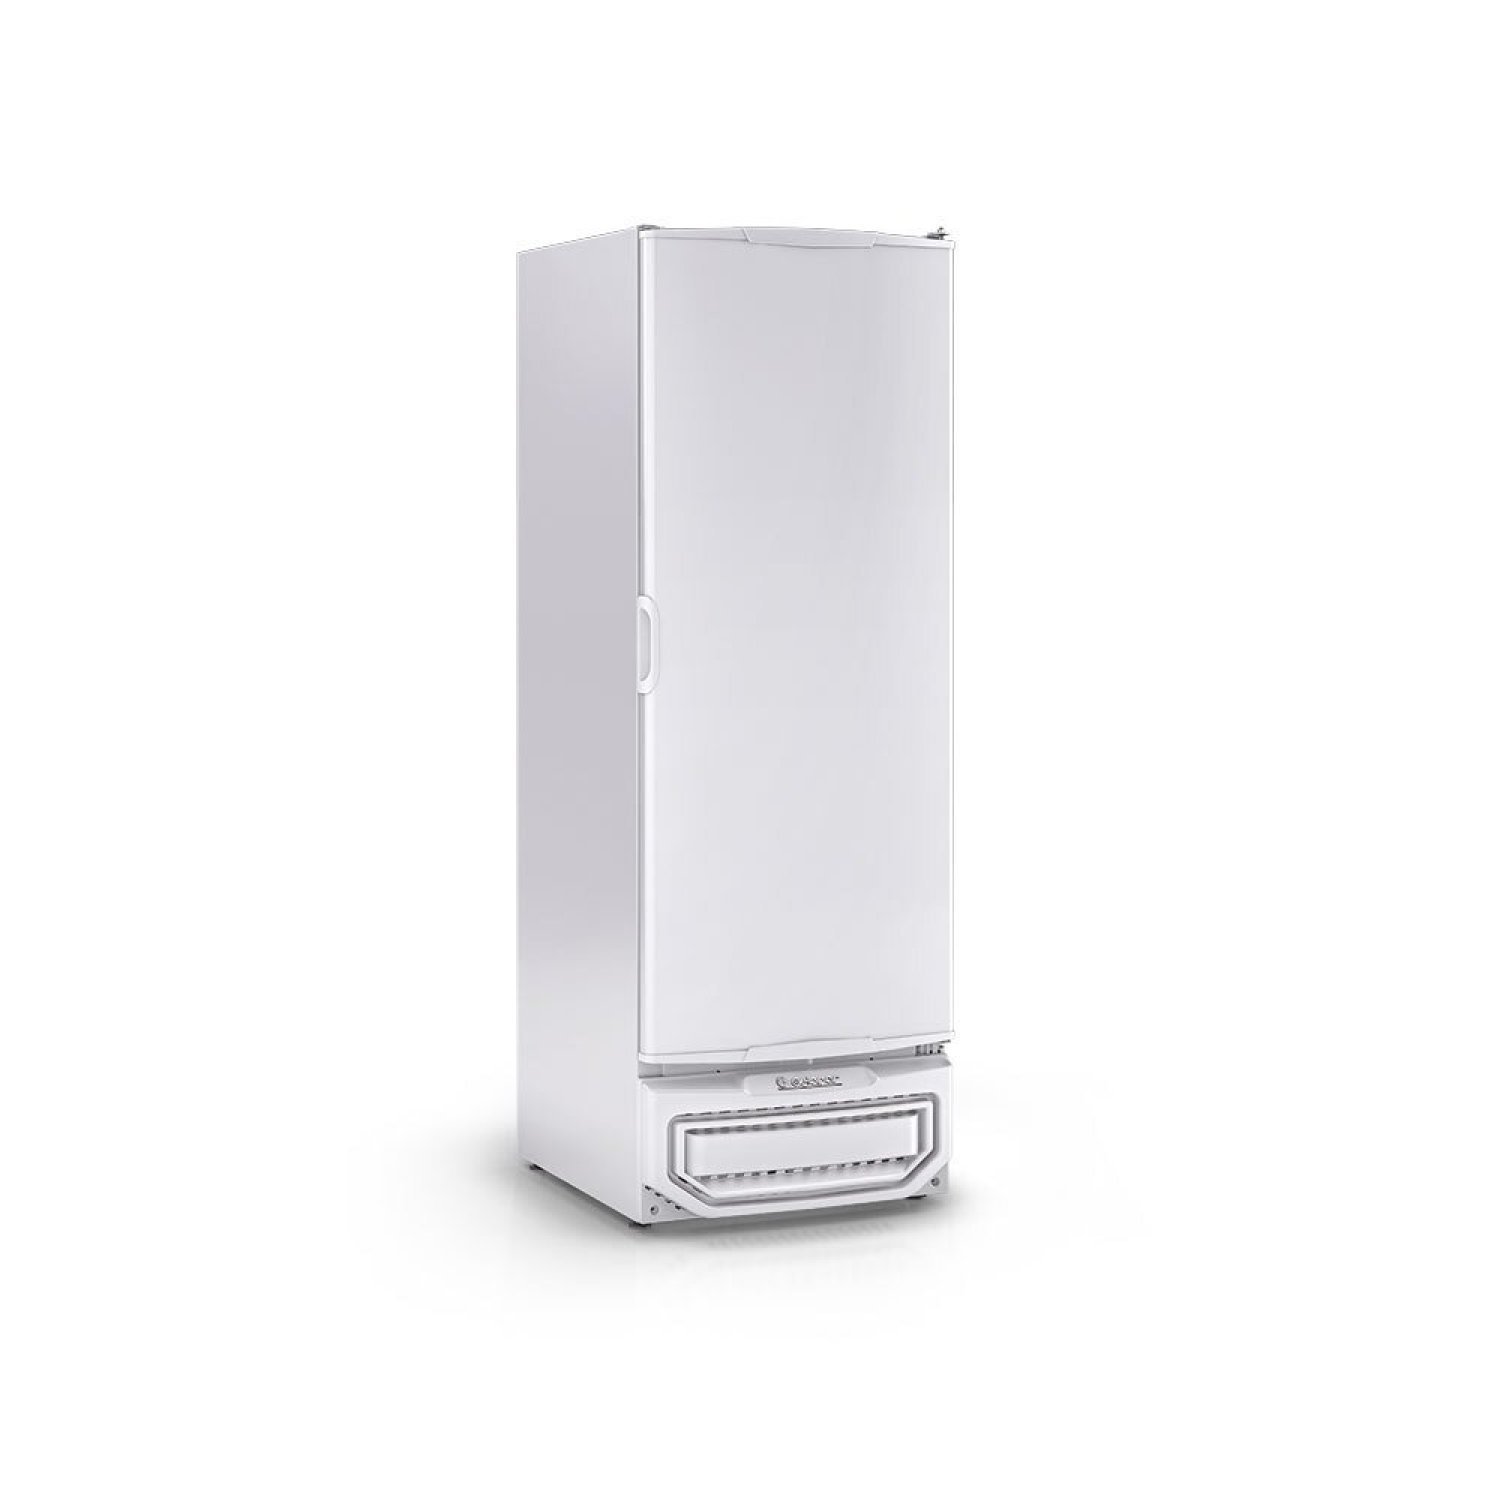 Conservador/Refrigerador Vertical Gpc-575a BR 220v Gelopar